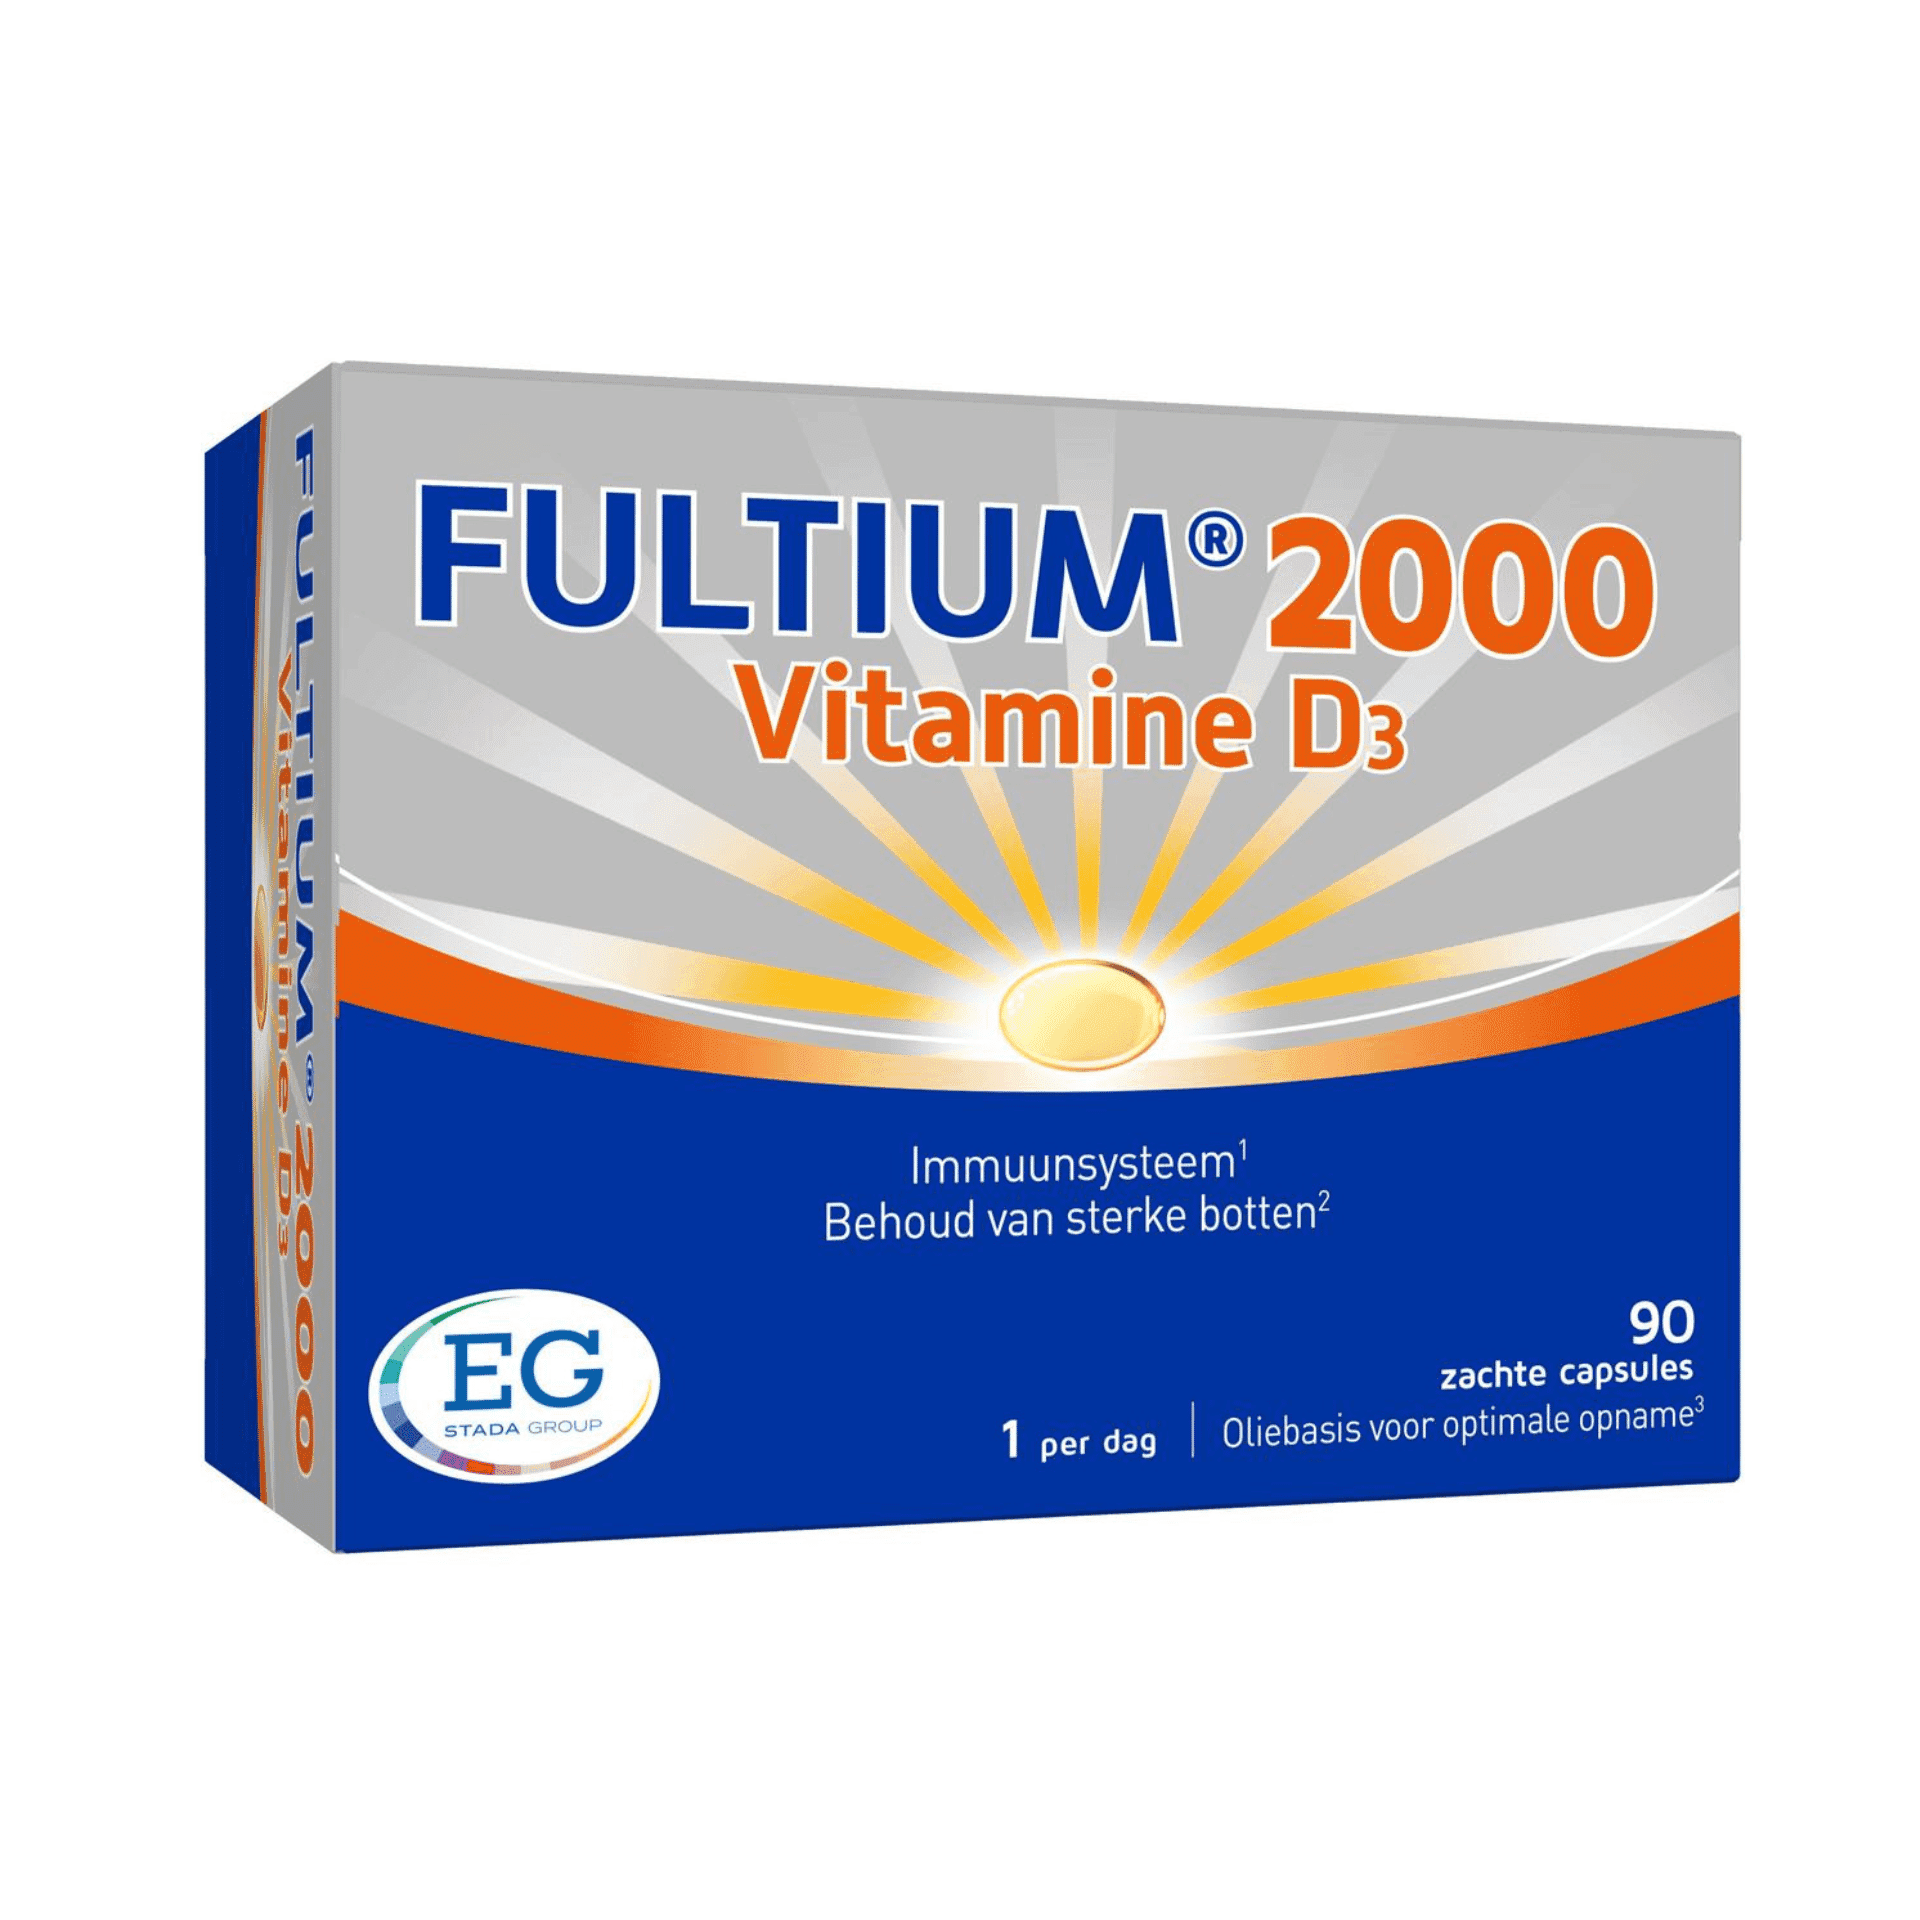 Fultium 2000 Vitamine D3